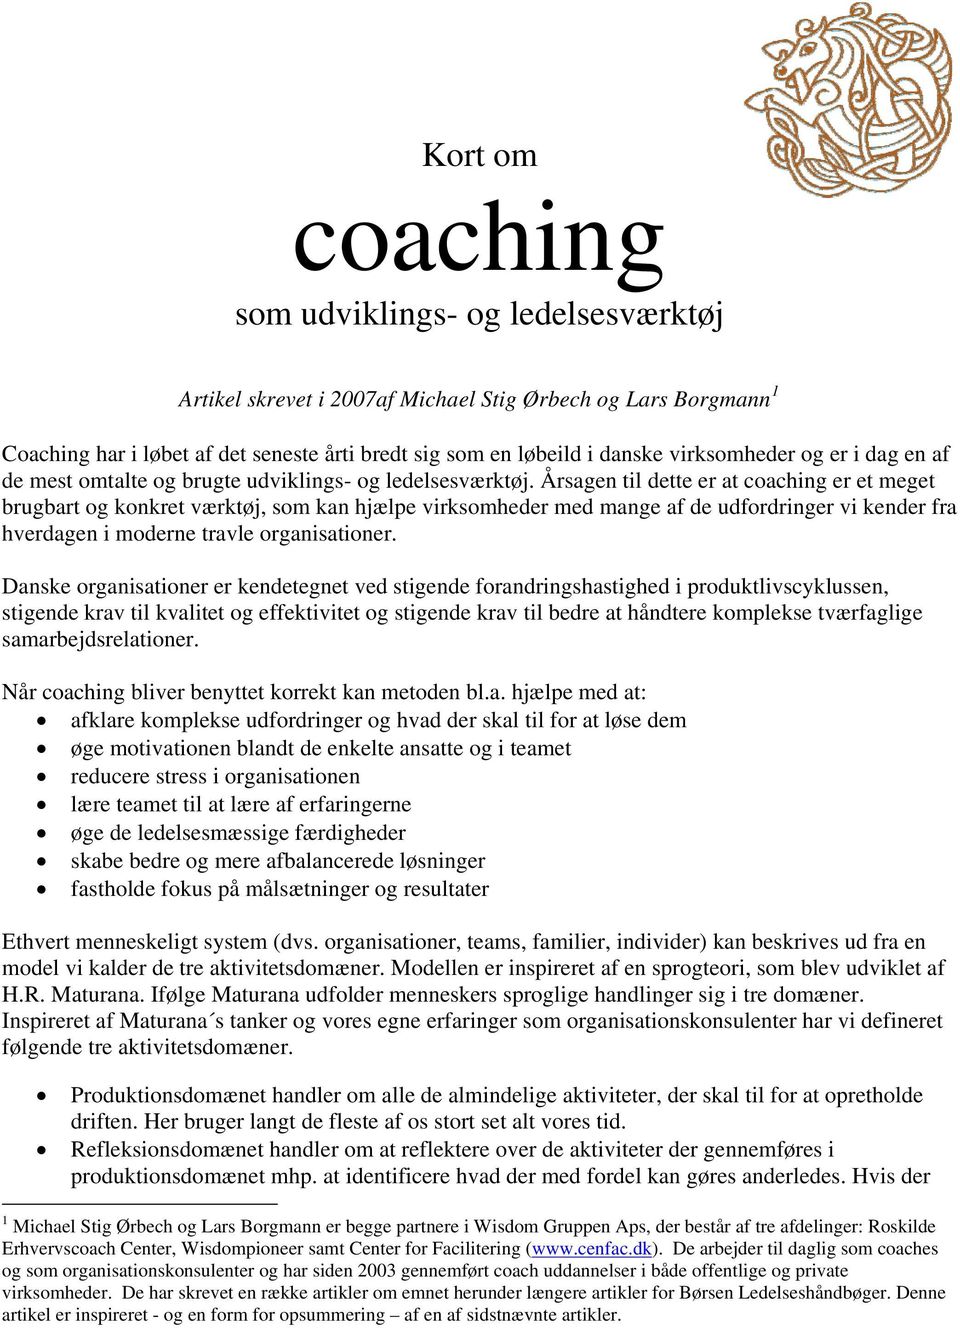 Kort om coaching. som udviklings- og ledelsesværktøj - PDF Free Download